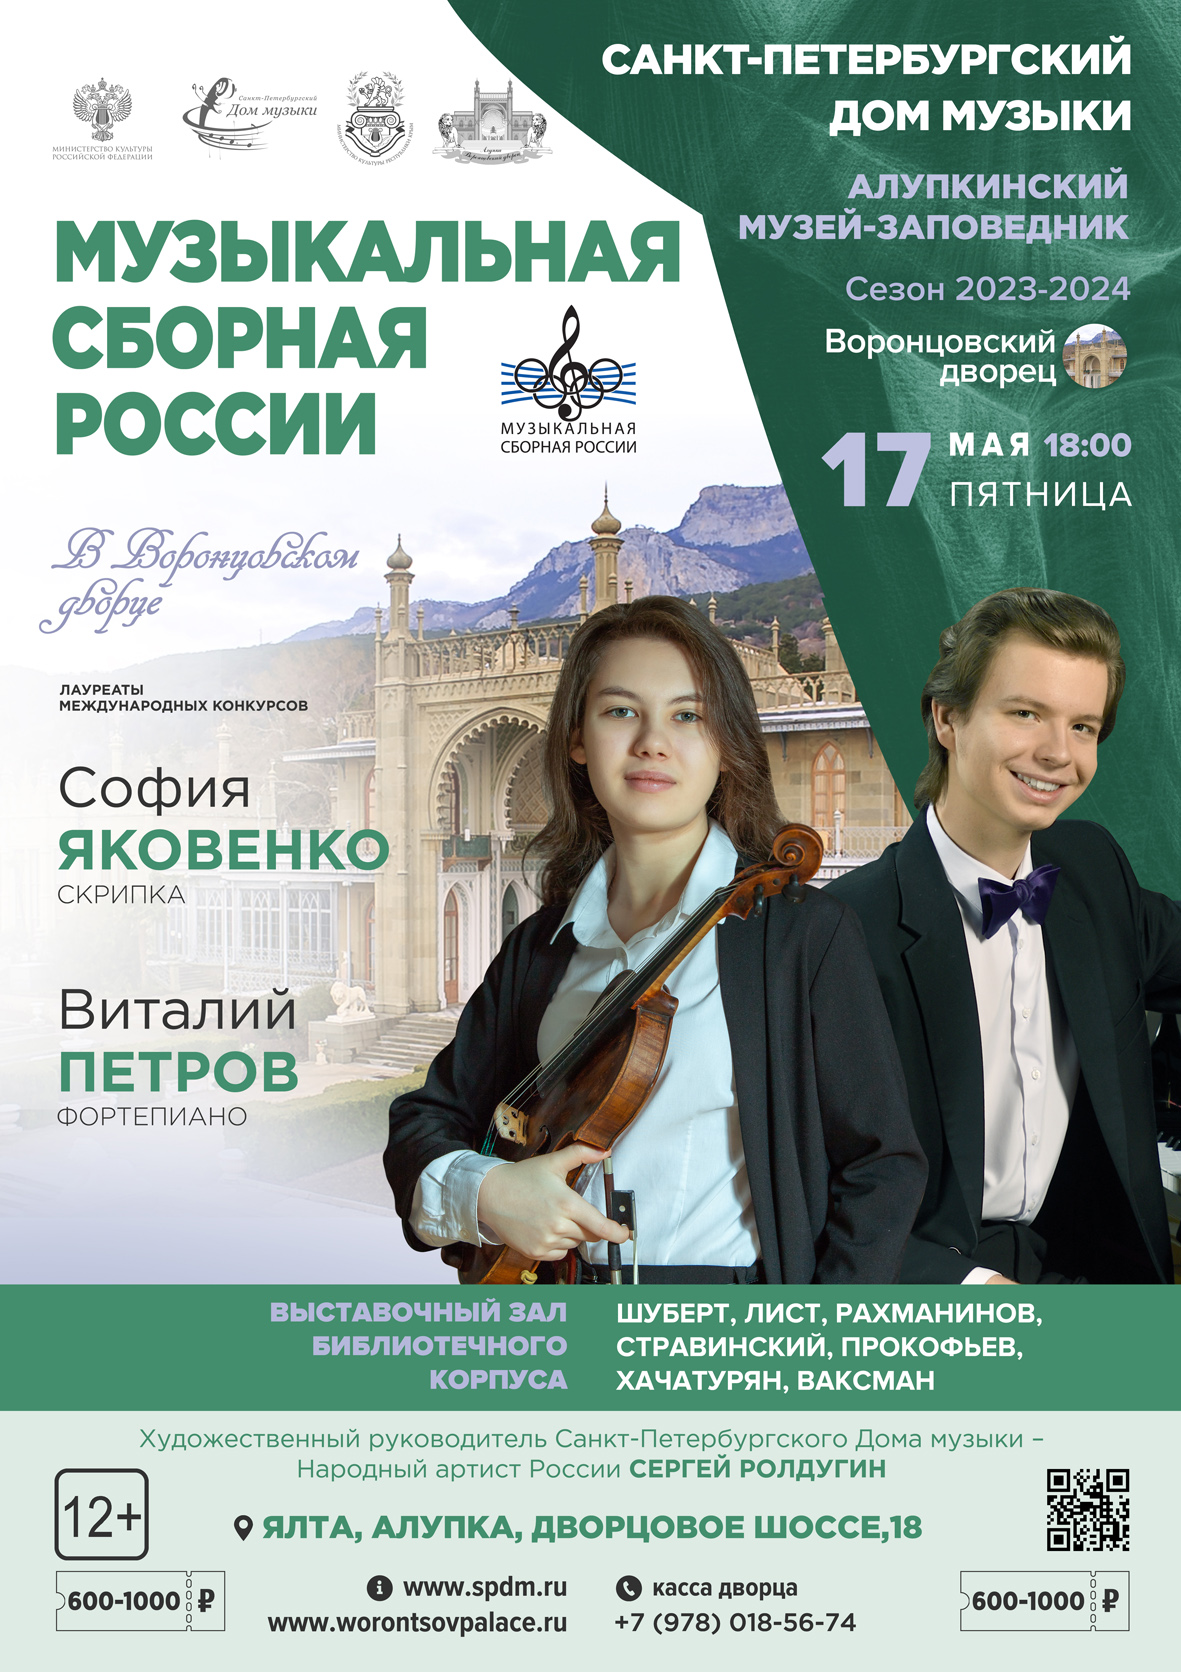 Подробнее о статье «Музыкальная сборная России в Воронцовском дворце»